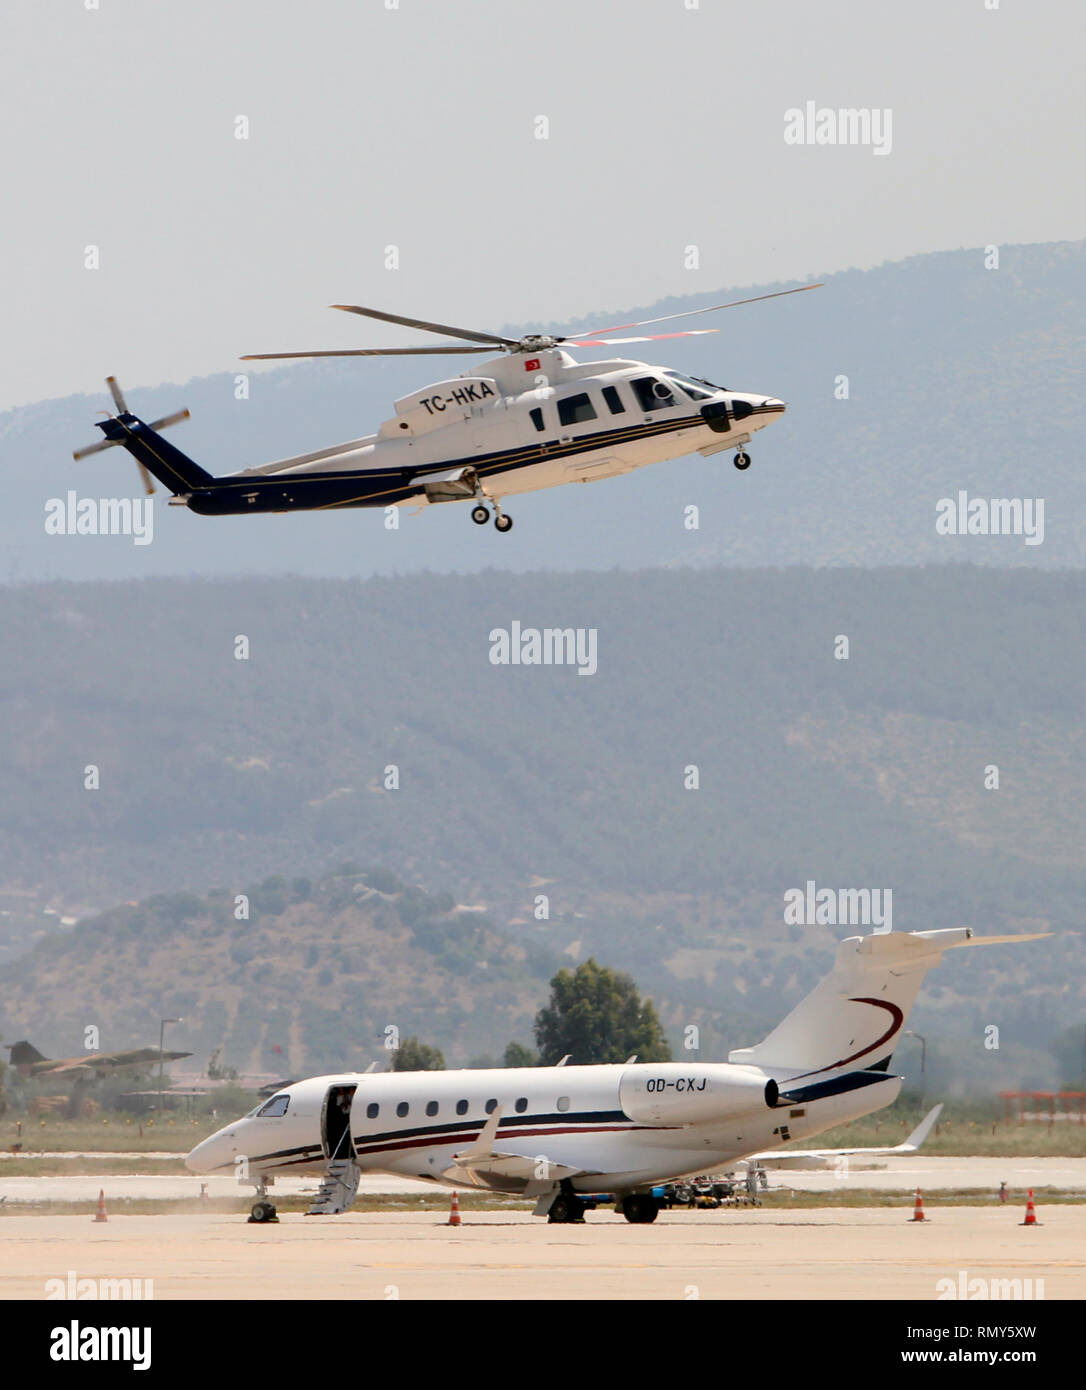 Un Sikorsky S-76c Spirito con coda n. TC-HKA terre accanto a un Embraer EMB 550 500 legacy business jet con coda n. OD-CXJ. Foto Stock